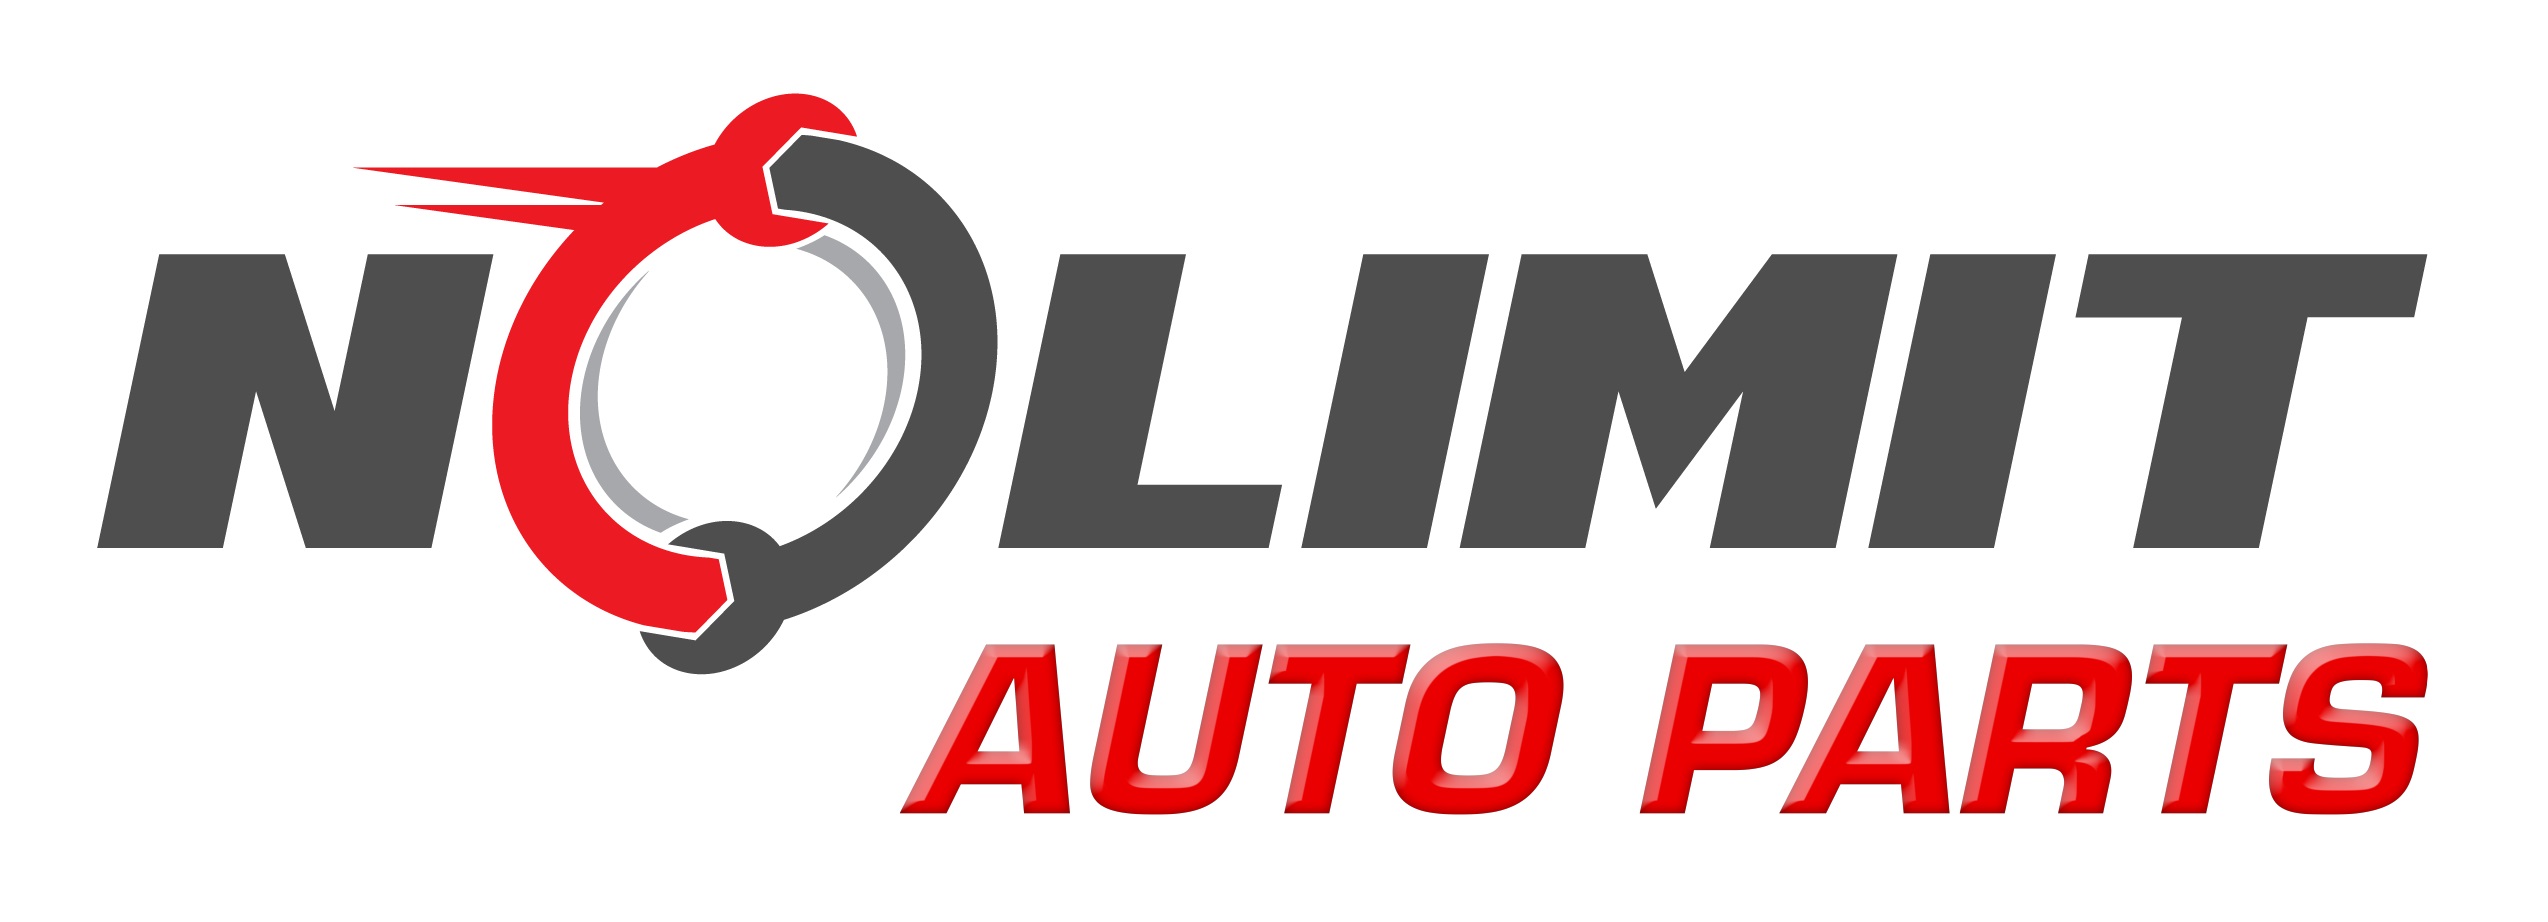 Nolimit Auto Parts Distributor Ltd